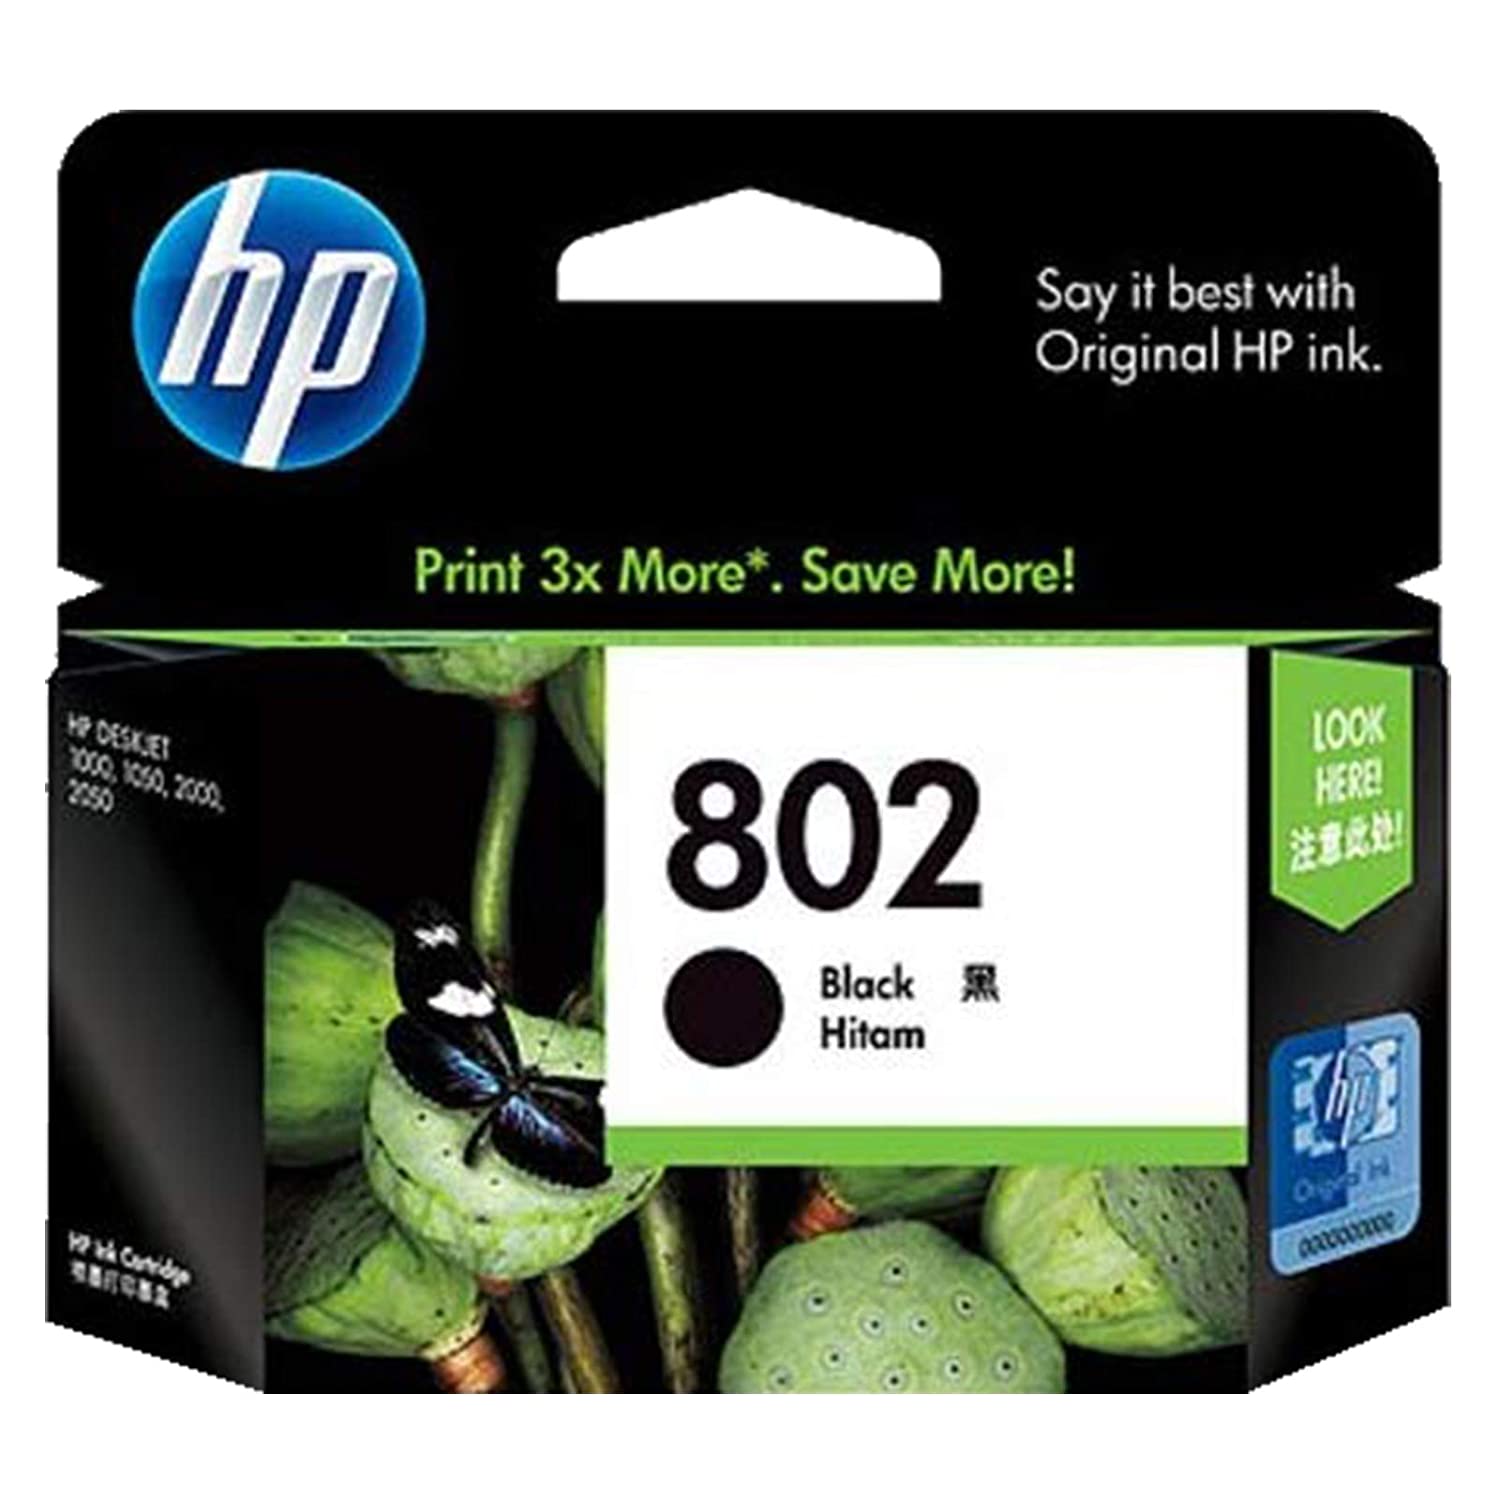 HP 802 Black Ink Cartridge (CH563ZZ)